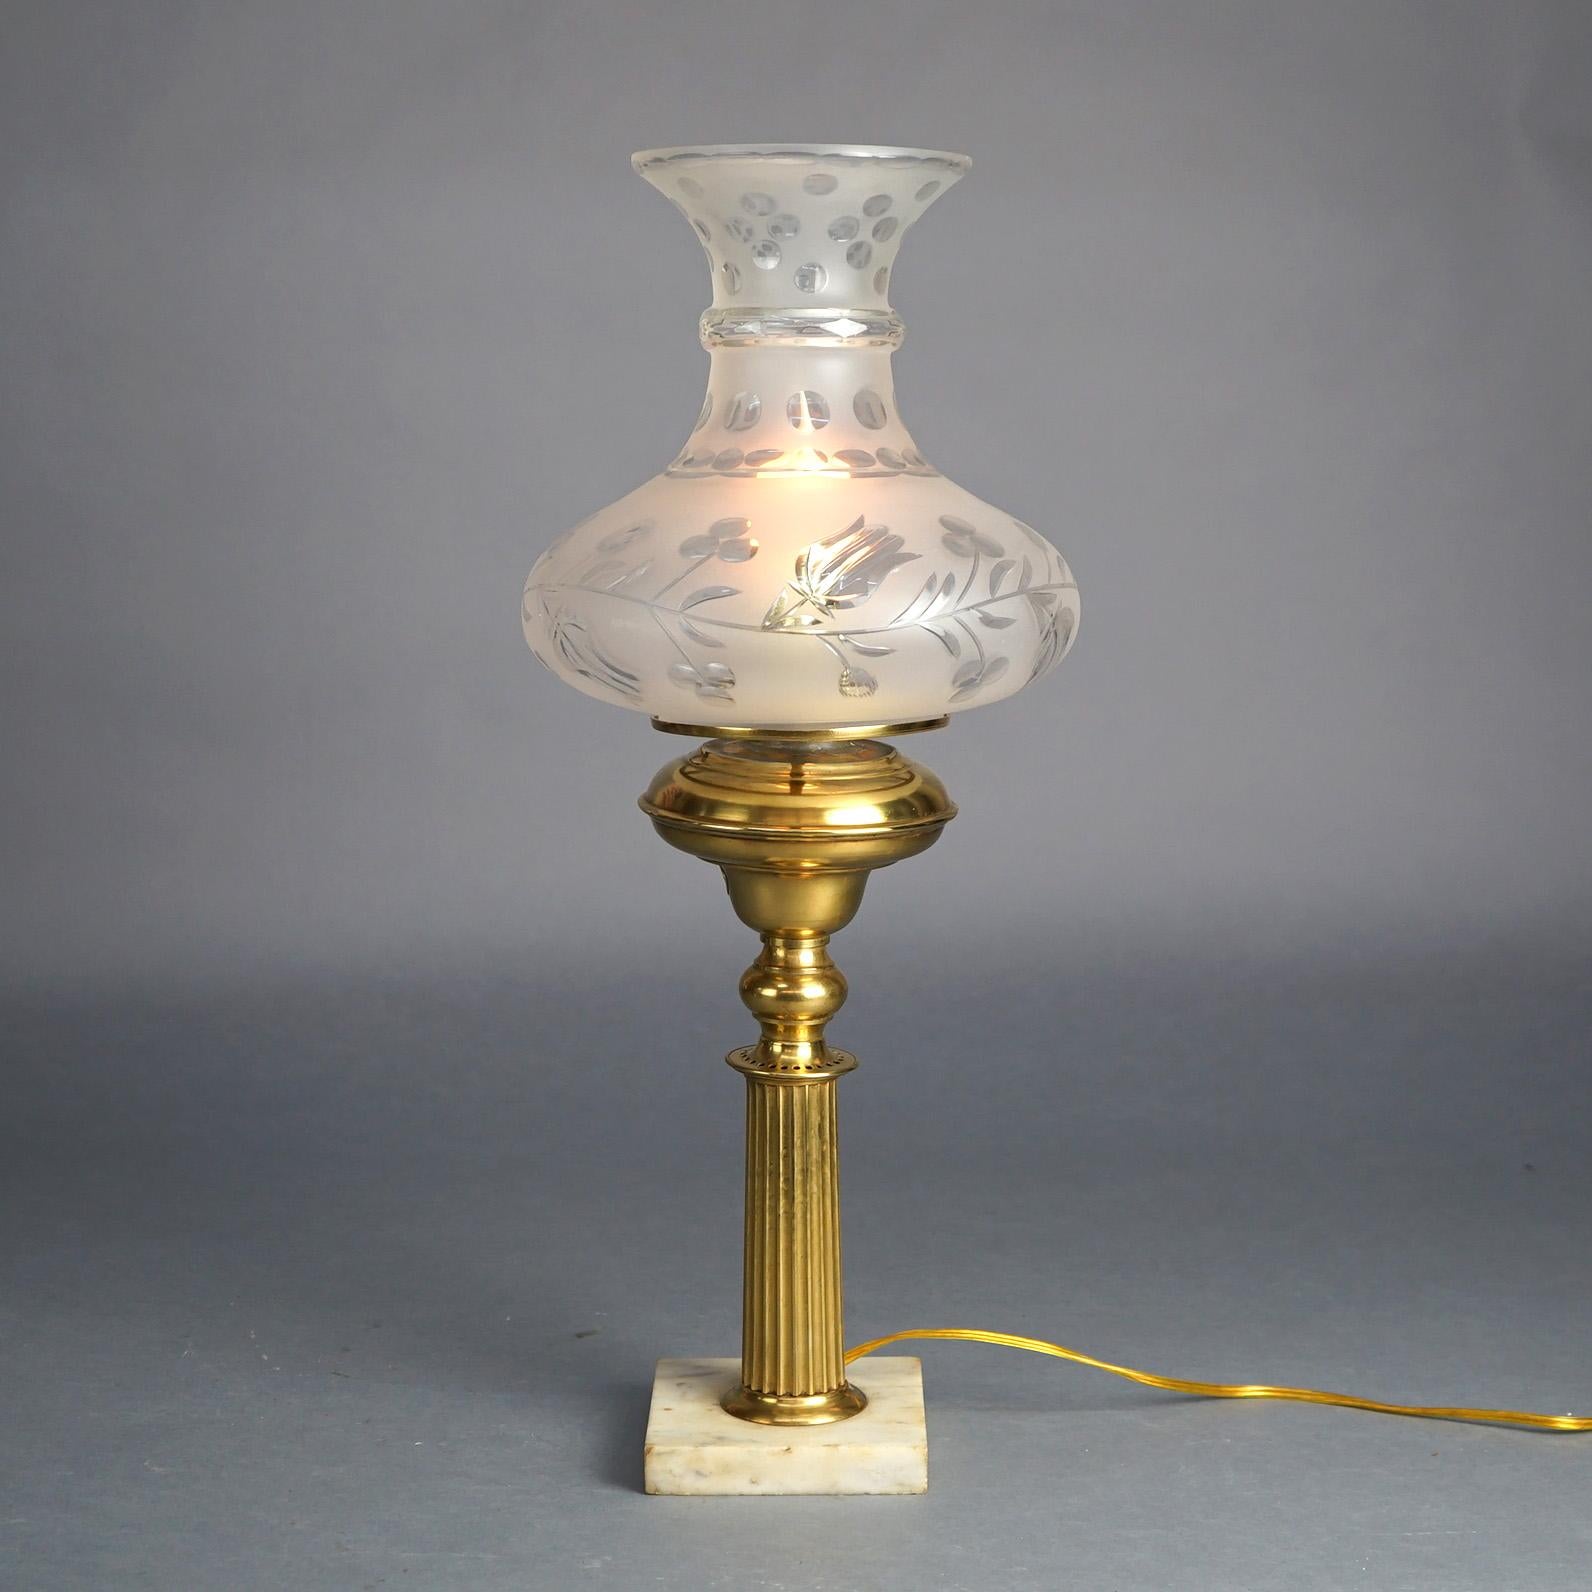 Lampe solaire ancienne en laiton cannelé avec abat-jour en verre taillé floral Tam-O-Shanter et base en marbre C1840

Dimensions : 23,5''H x 9,5''L x 9,5''P